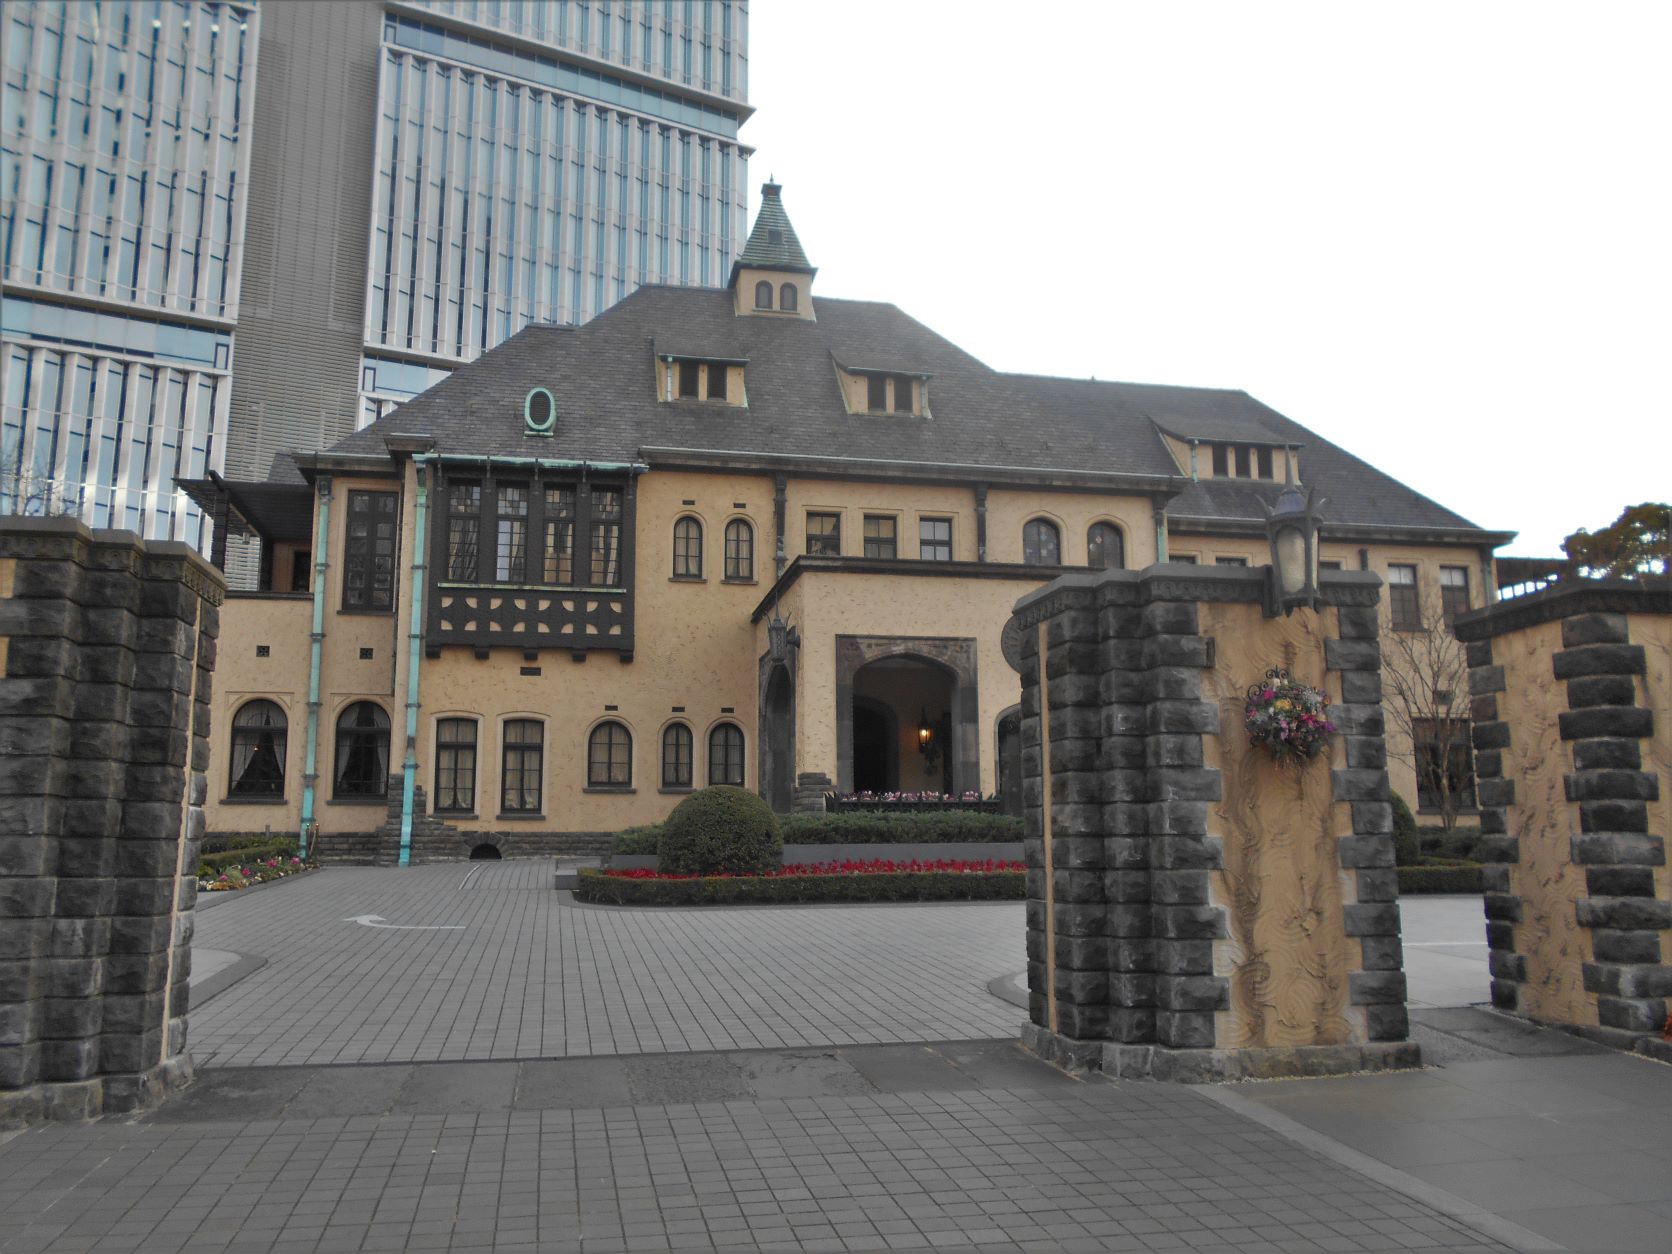 紀州徳川家赤坂藩邸跡に建つ旧李王家邸の画像。